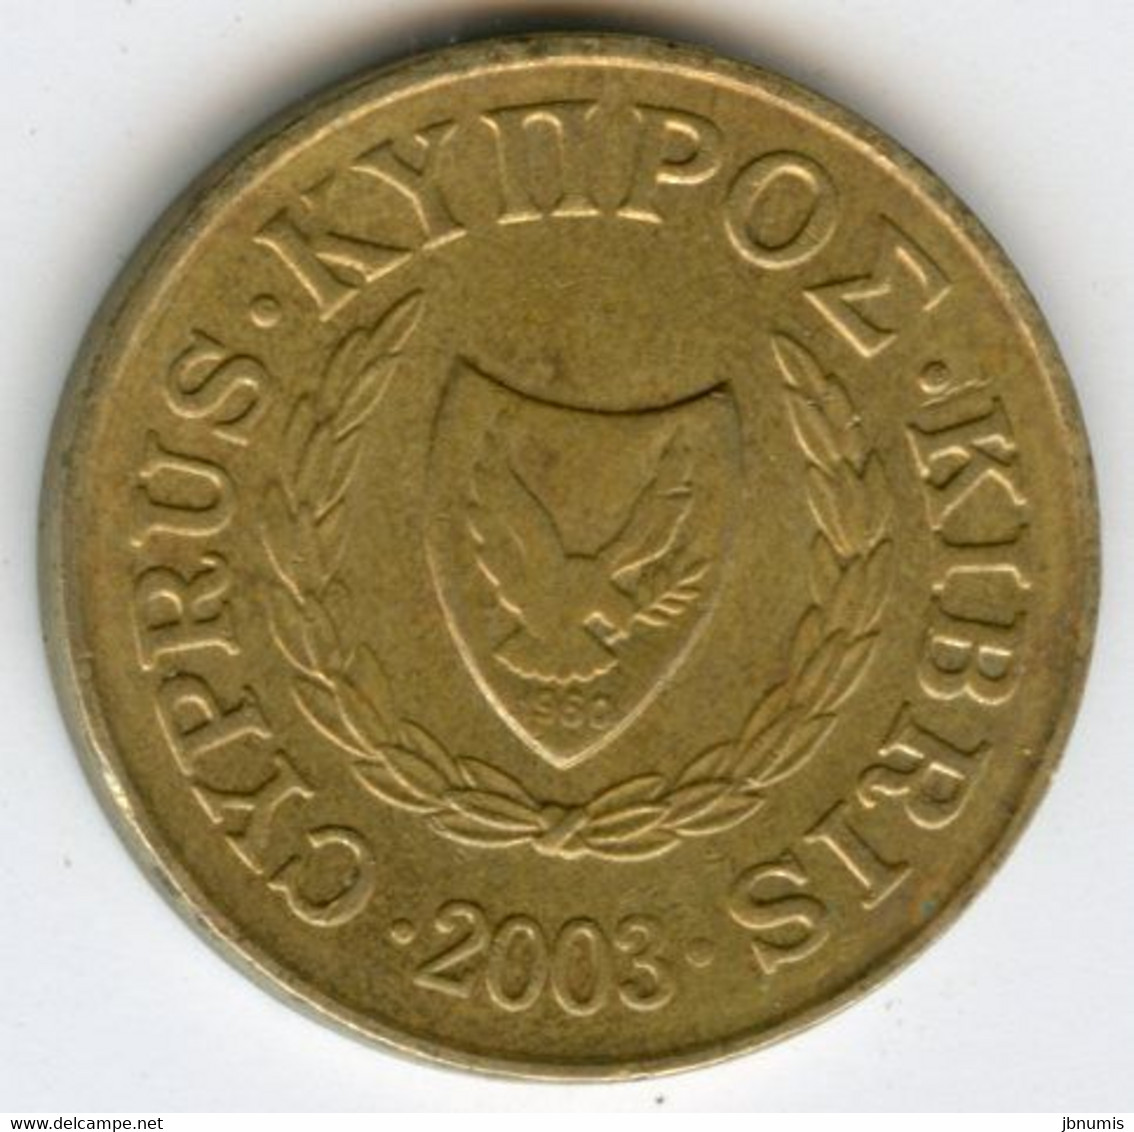 Chypre Cyprus 2 Cents 2003 KM 54.3 - Cyprus